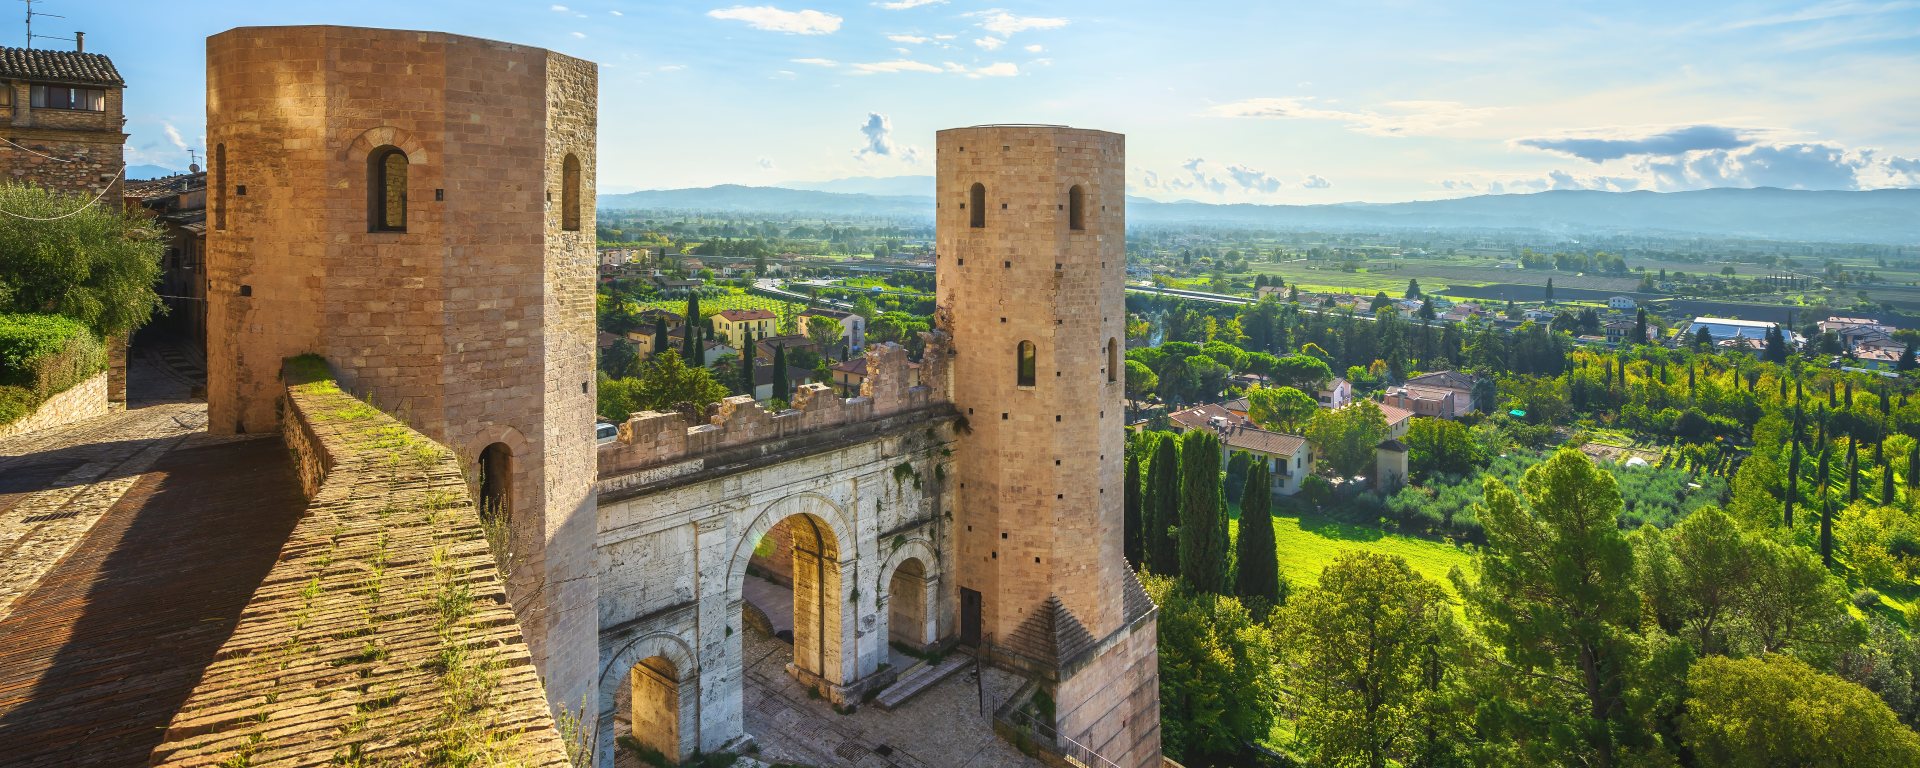 Spello, roman Porta Venere or Venus Gate. Perugia, Umbria, Italy